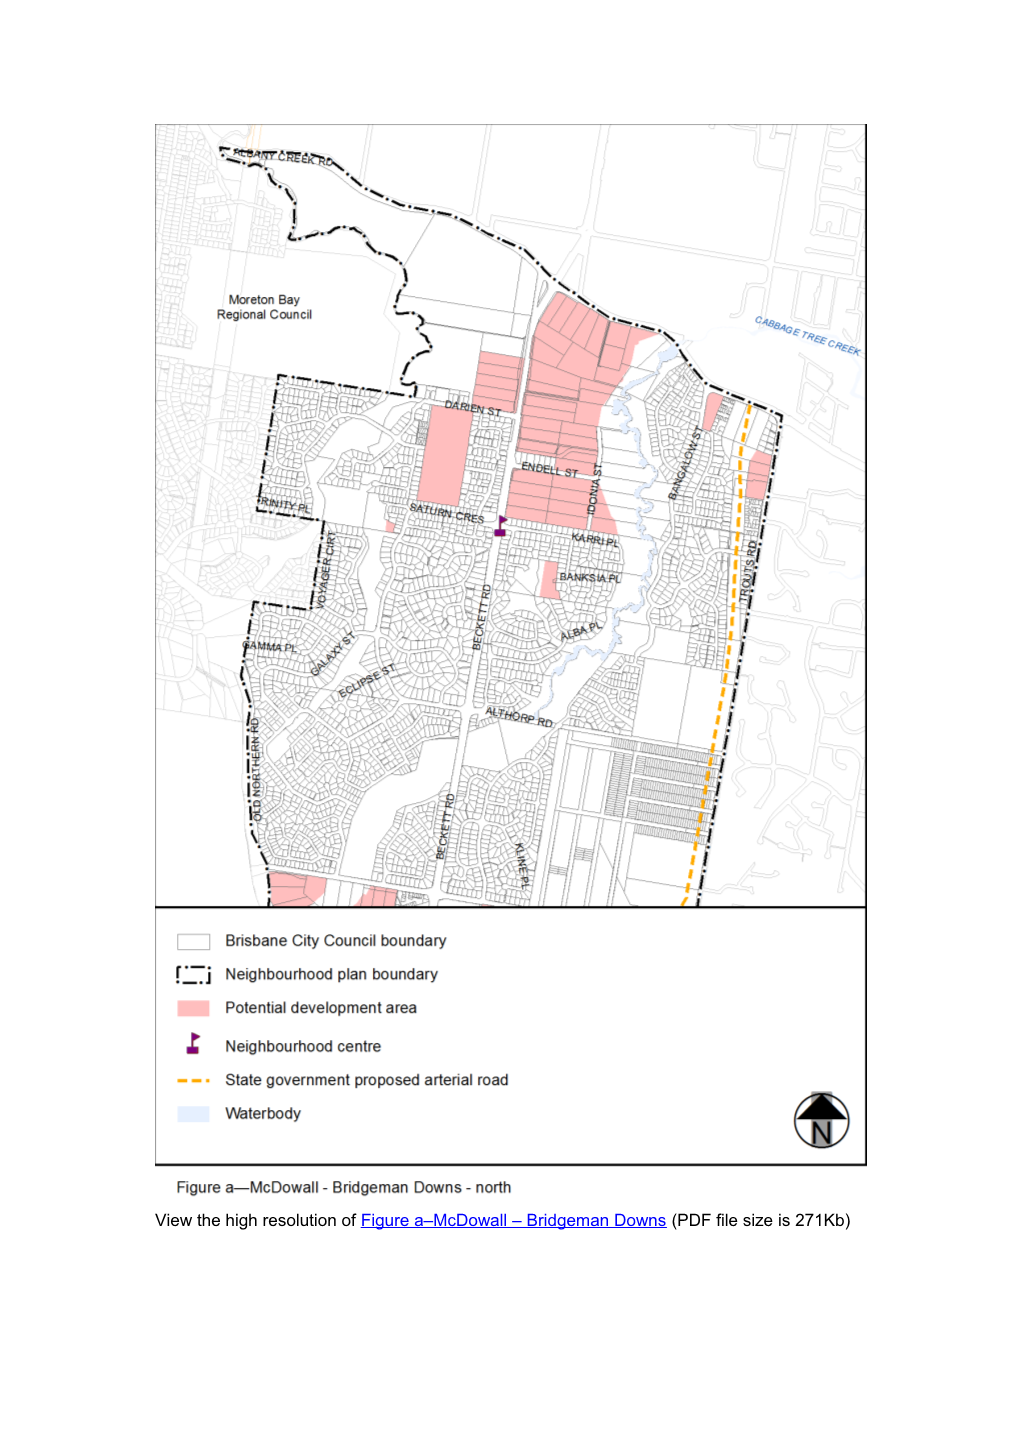 7.2.13.1Mcdowall Bridgeman Downs Neighbourhood Plan Code